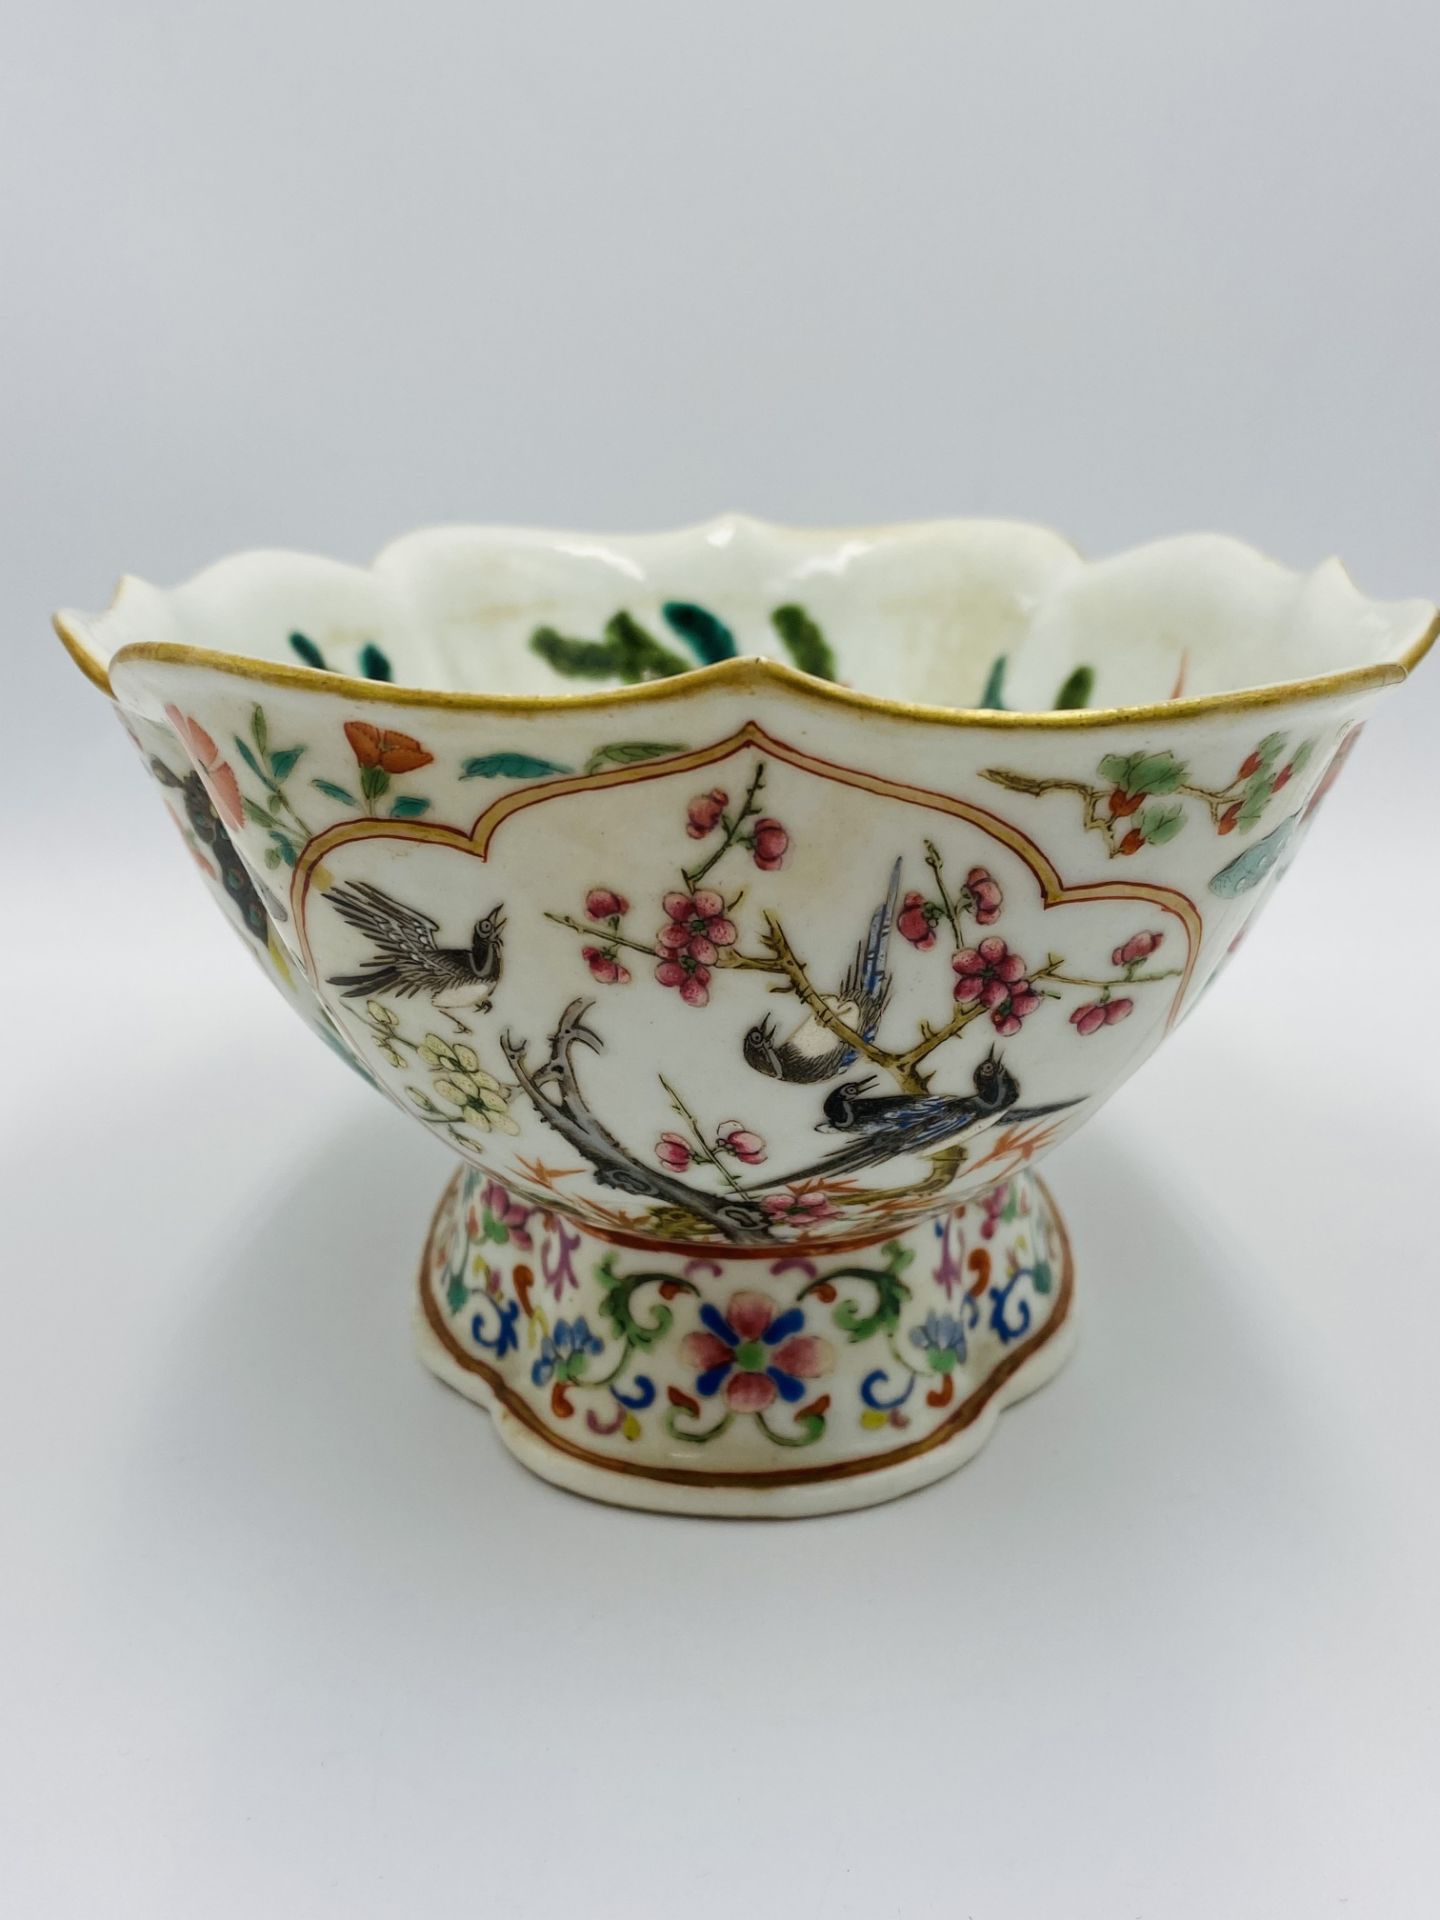 Chinese famille verte goldfish bowl - Image 6 of 7